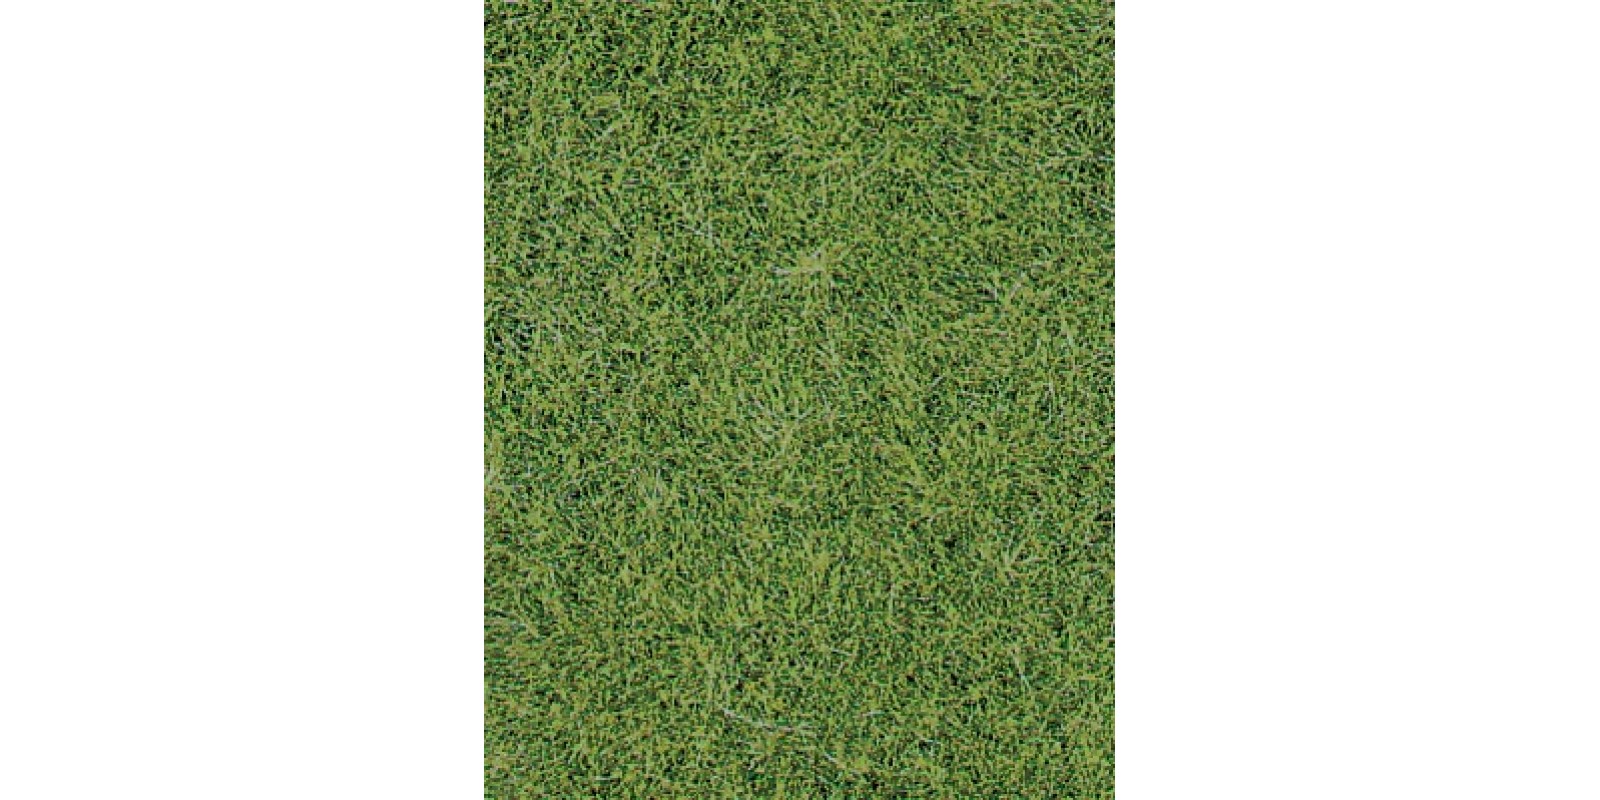 He1870 2 wild grass mat light green 40x25 cm